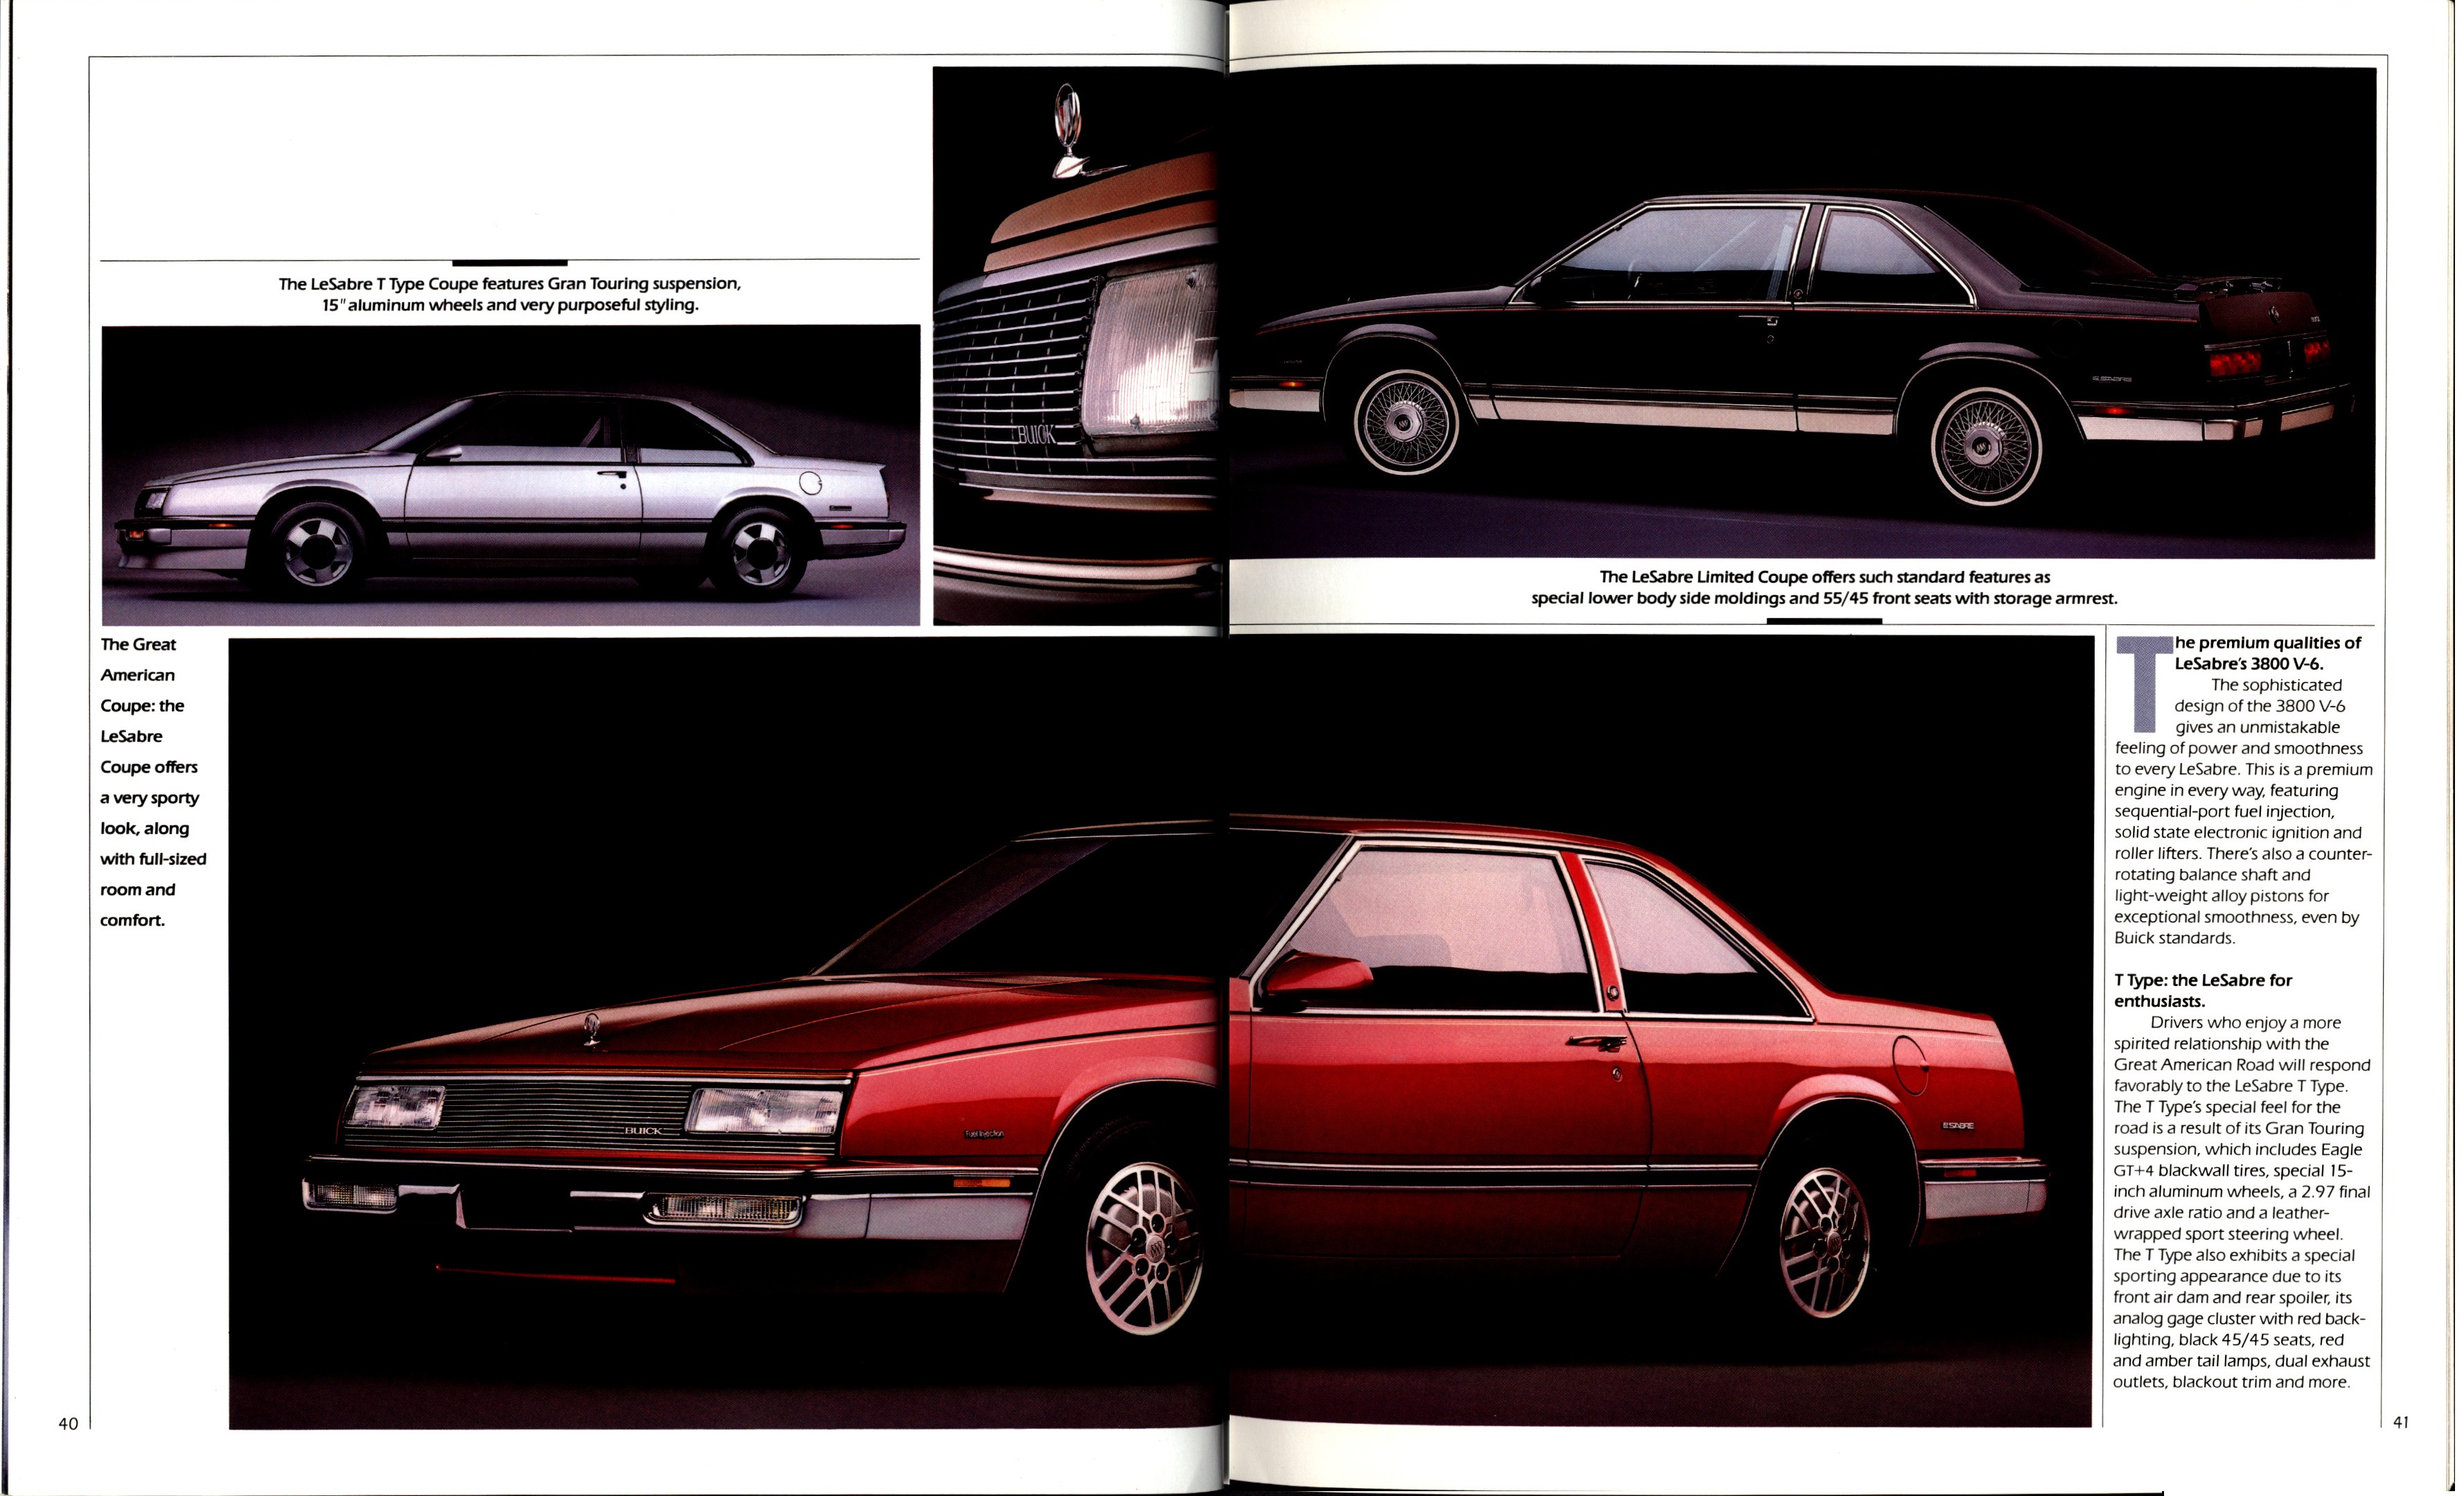 1989 Buick Full Line Prestige-40-41